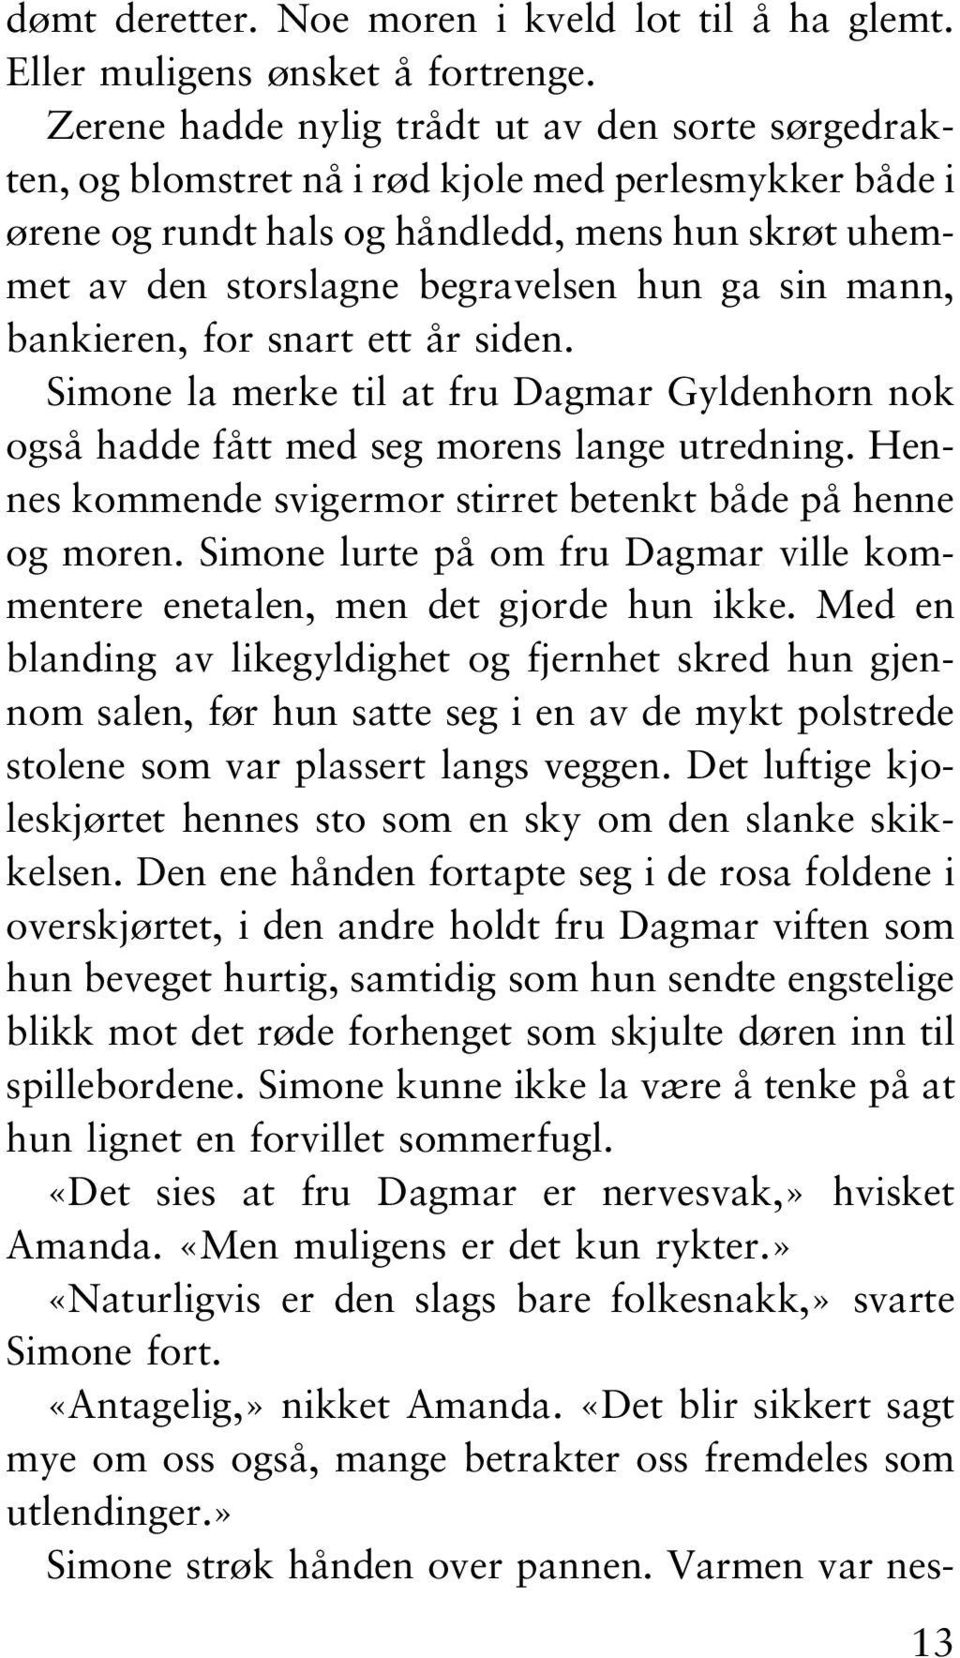 sin mann, bankieren, for snart ett år siden. Simone la merke til at fru Dagmar Gyldenhorn nok også hadde fått med seg morens lange utredning.